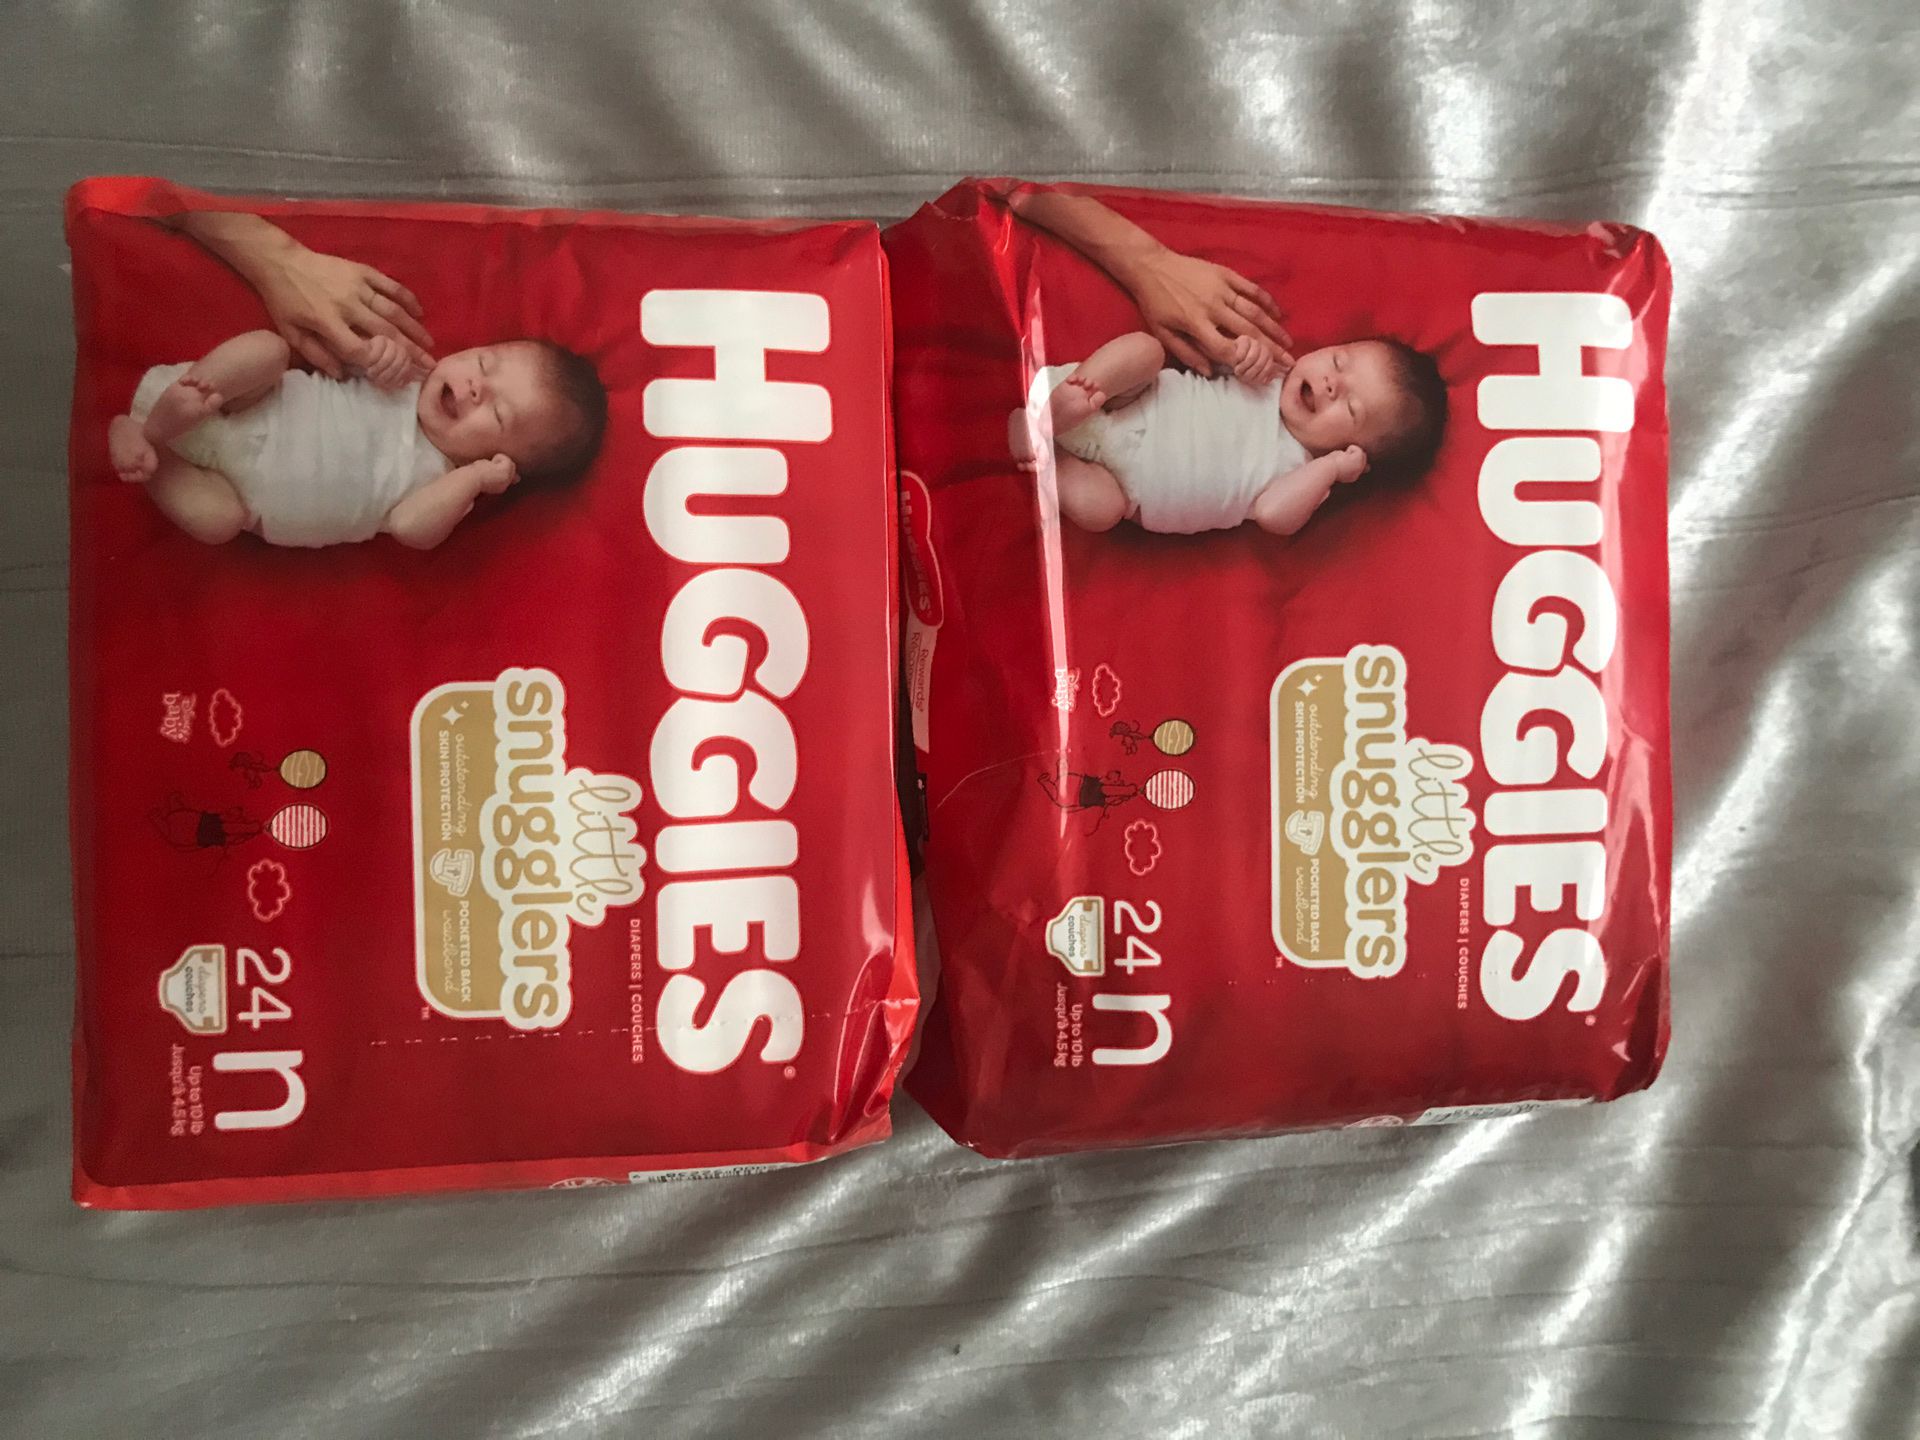 Huggies newborn diapers